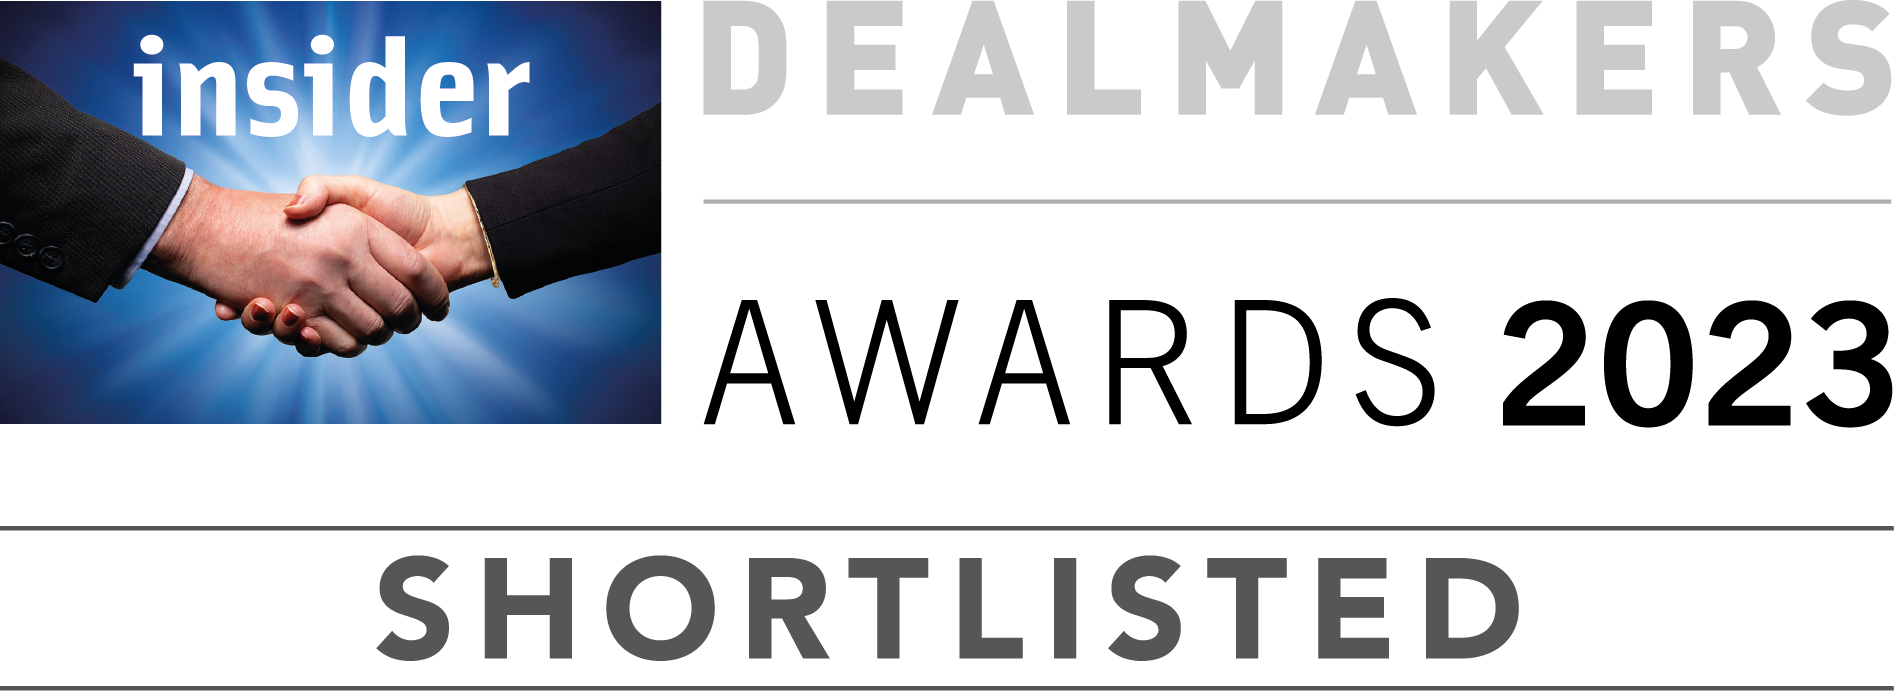 Dealmakers business award shortlist